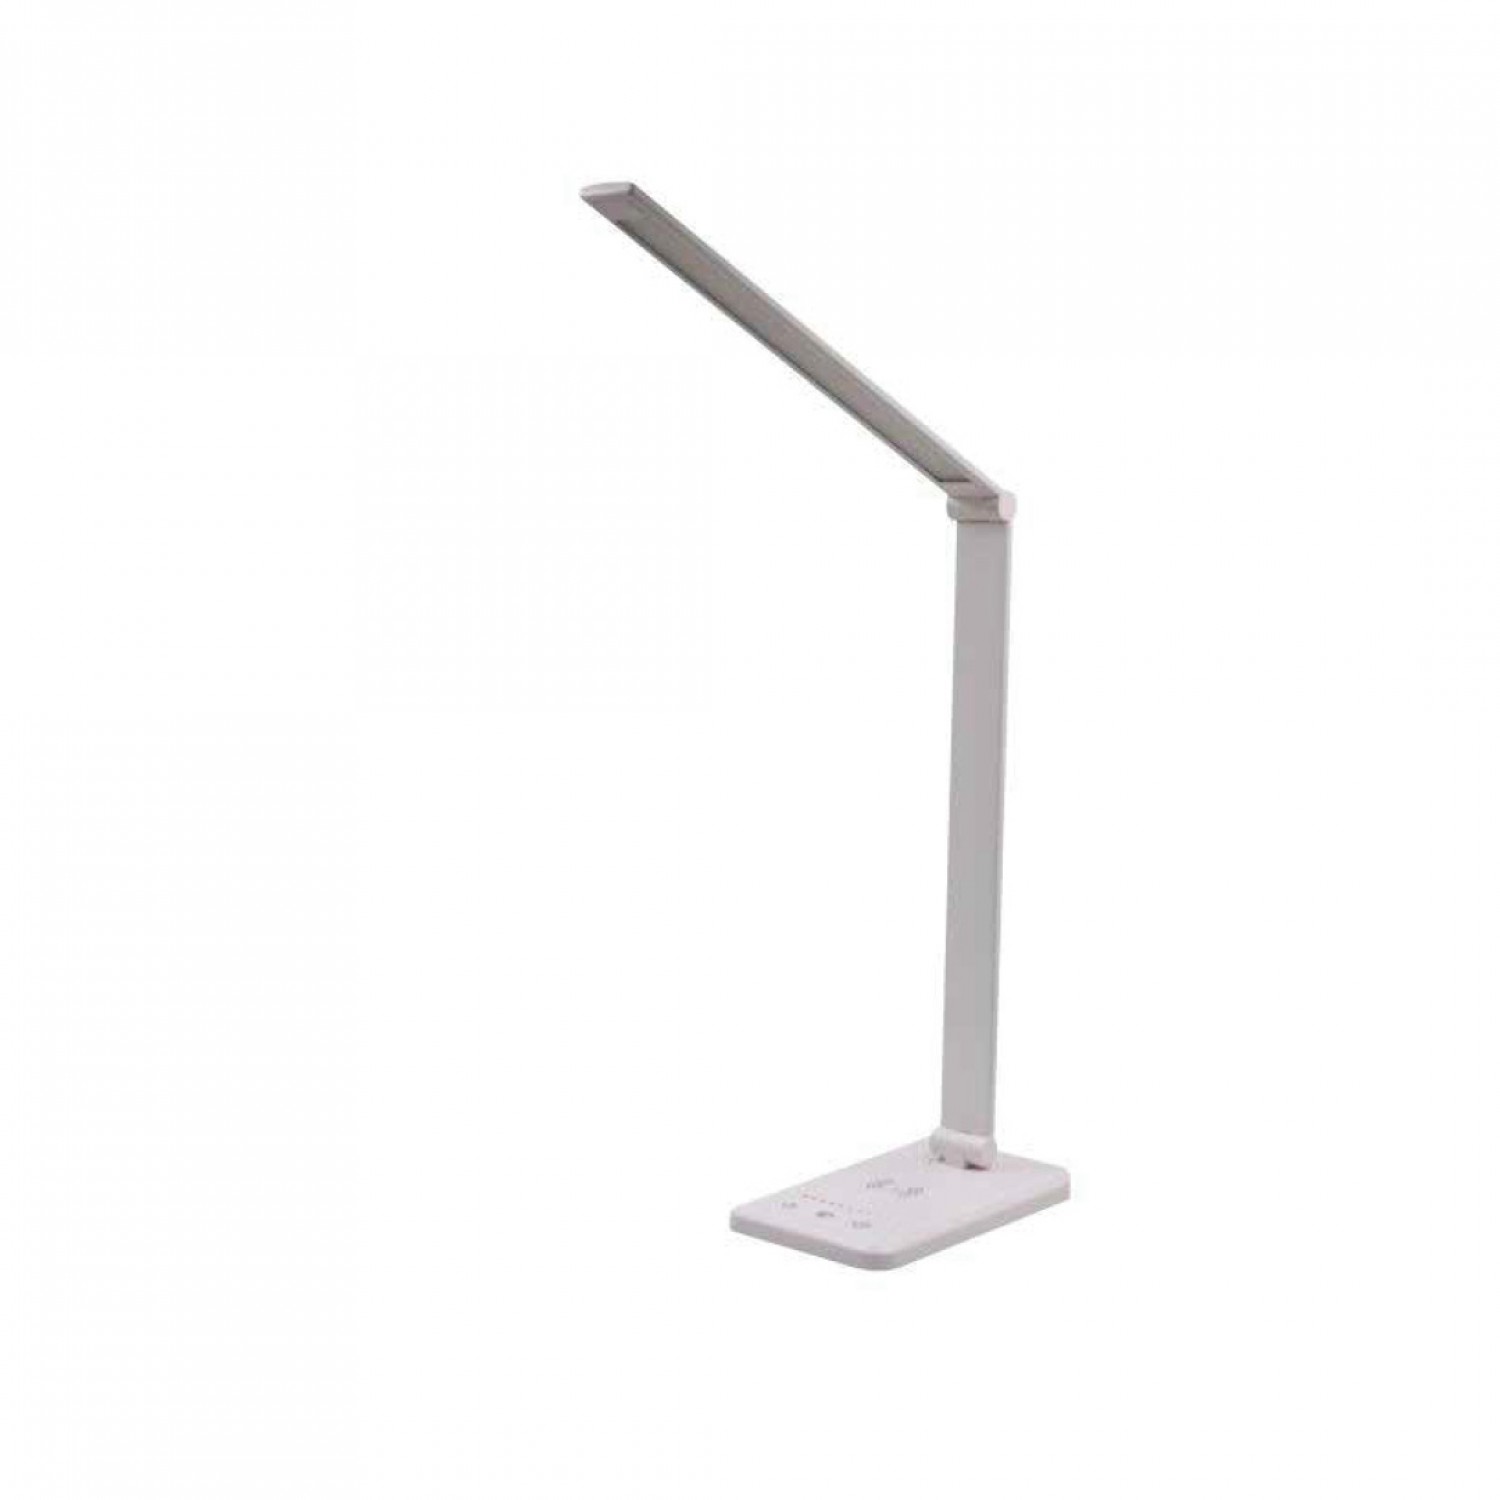 Επιτραπέζιο φωτιστικό LED 7W 3CCT (by touch) σε λευκό χρώμα D:39cm (3045-WH)